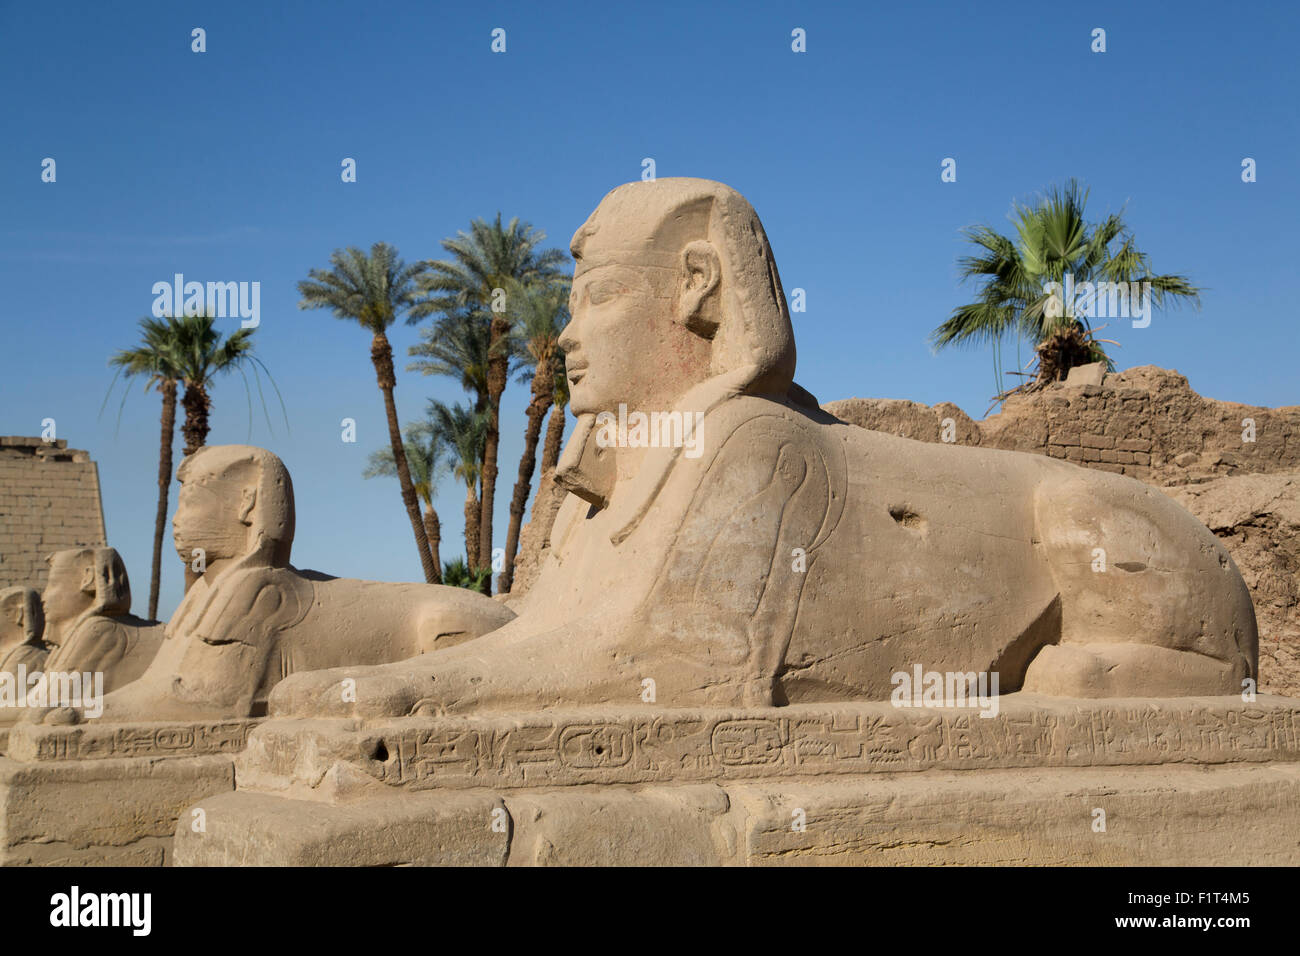 Avenida de esfinges, Templo de Luxor, Luxor, Tebas, Sitio del Patrimonio Mundial de la UNESCO, Egipto, el Norte de África, África Foto de stock